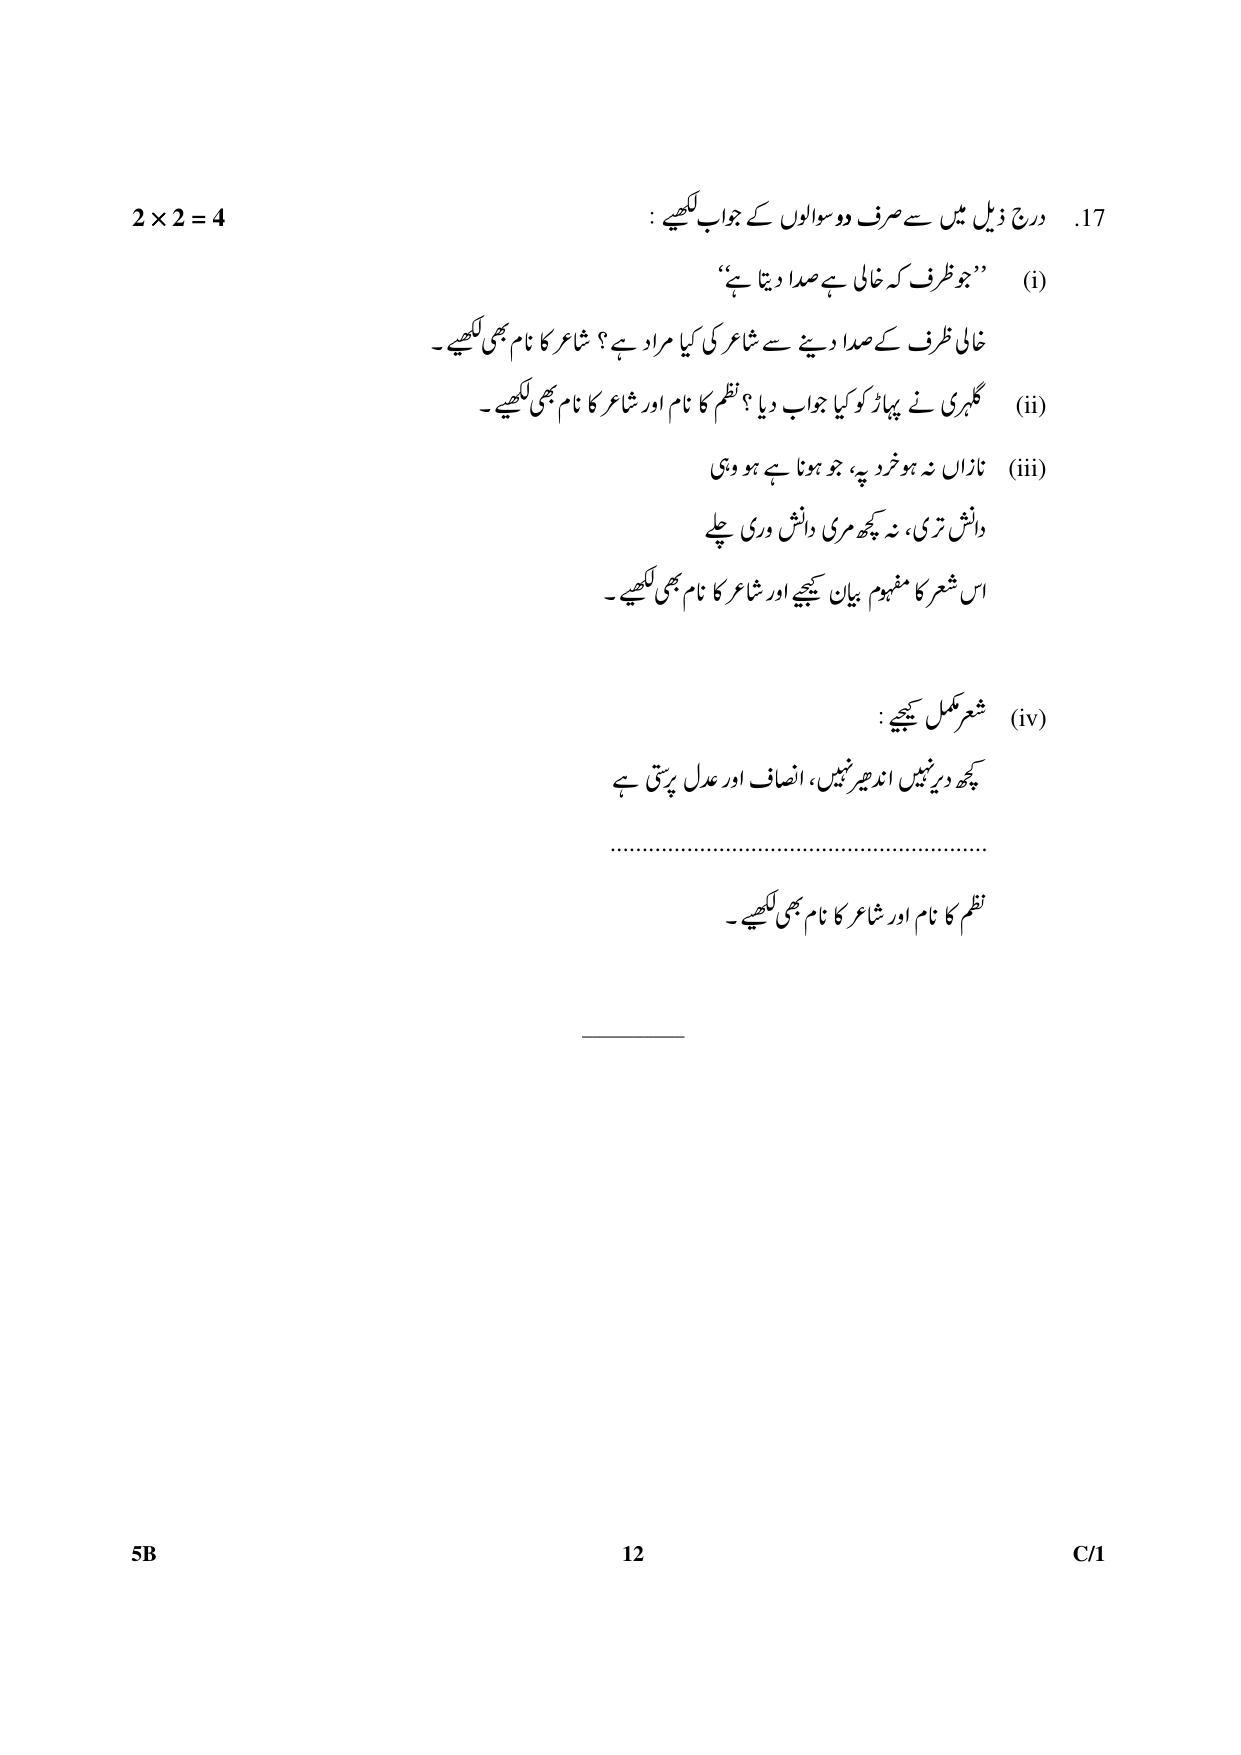 CBSE Class 10 5B Urdu (Course B) 2018 Compartment Question Paper - Page 12